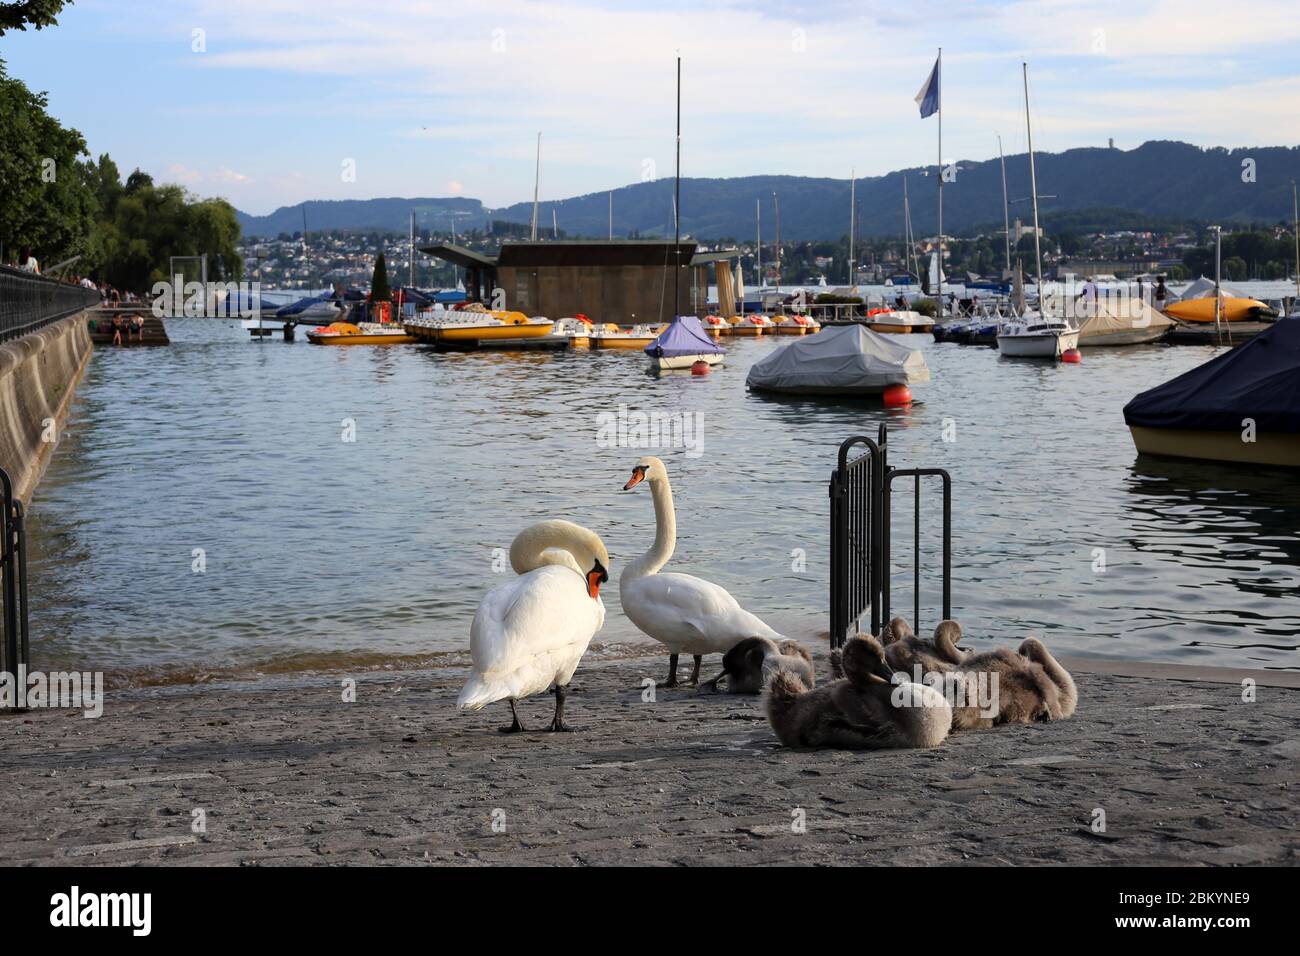 Famille Swan photographiée pendant une soirée ensoleillée à Zurich Suisse, juillet 2018. Il y a deux cygnes adultes, plusieurs cygnes pour bébés, des bateaux, de l'eau de rivière. Banque D'Images